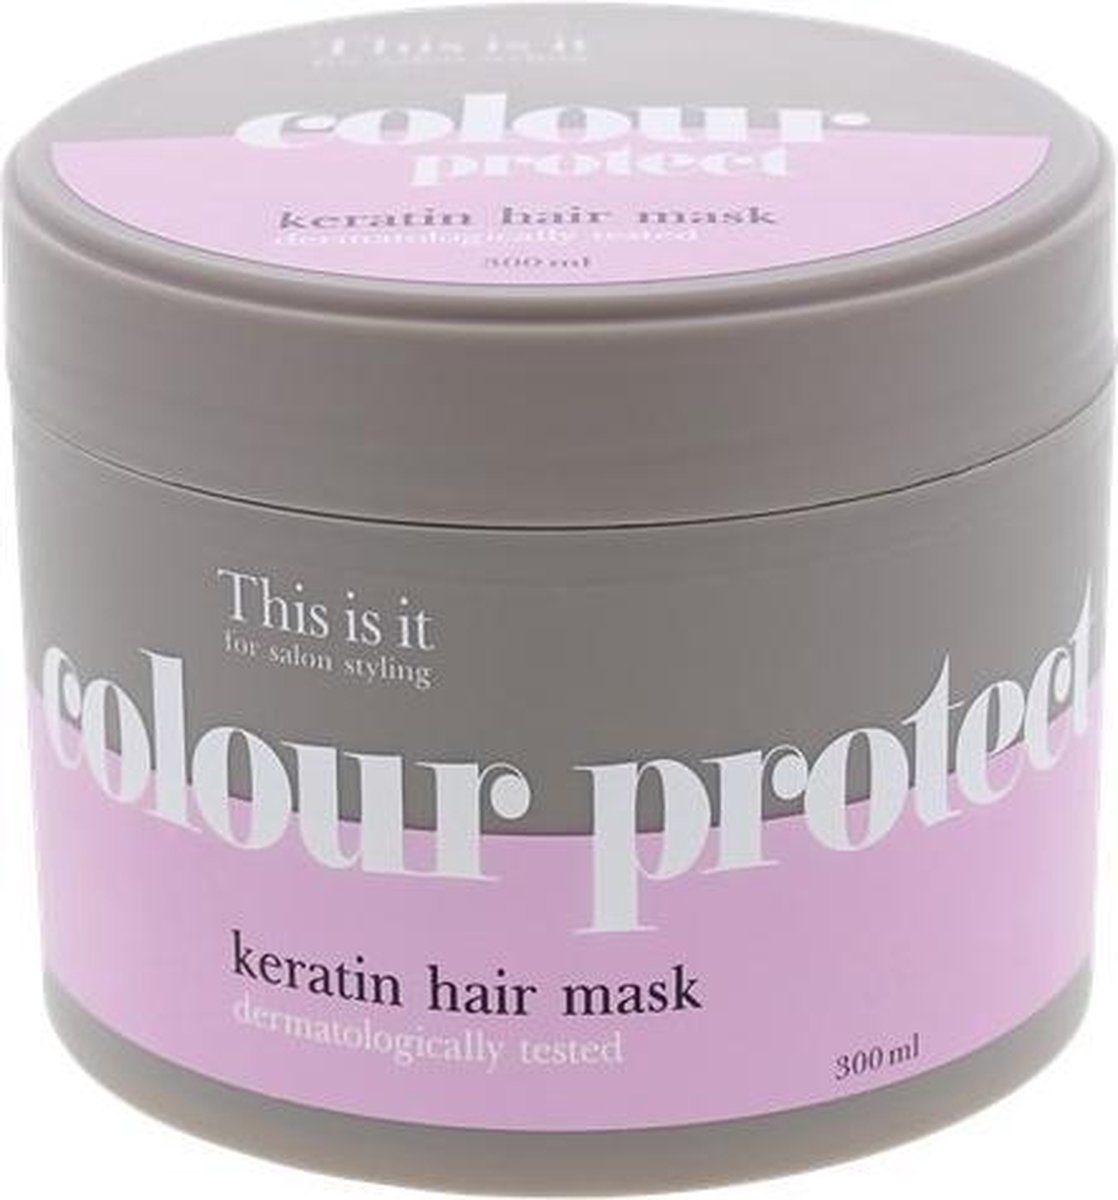 This is it - Keratine haarmasker - Voor salonstyling - kleurbescherming - dermatologisch getest - 300ml